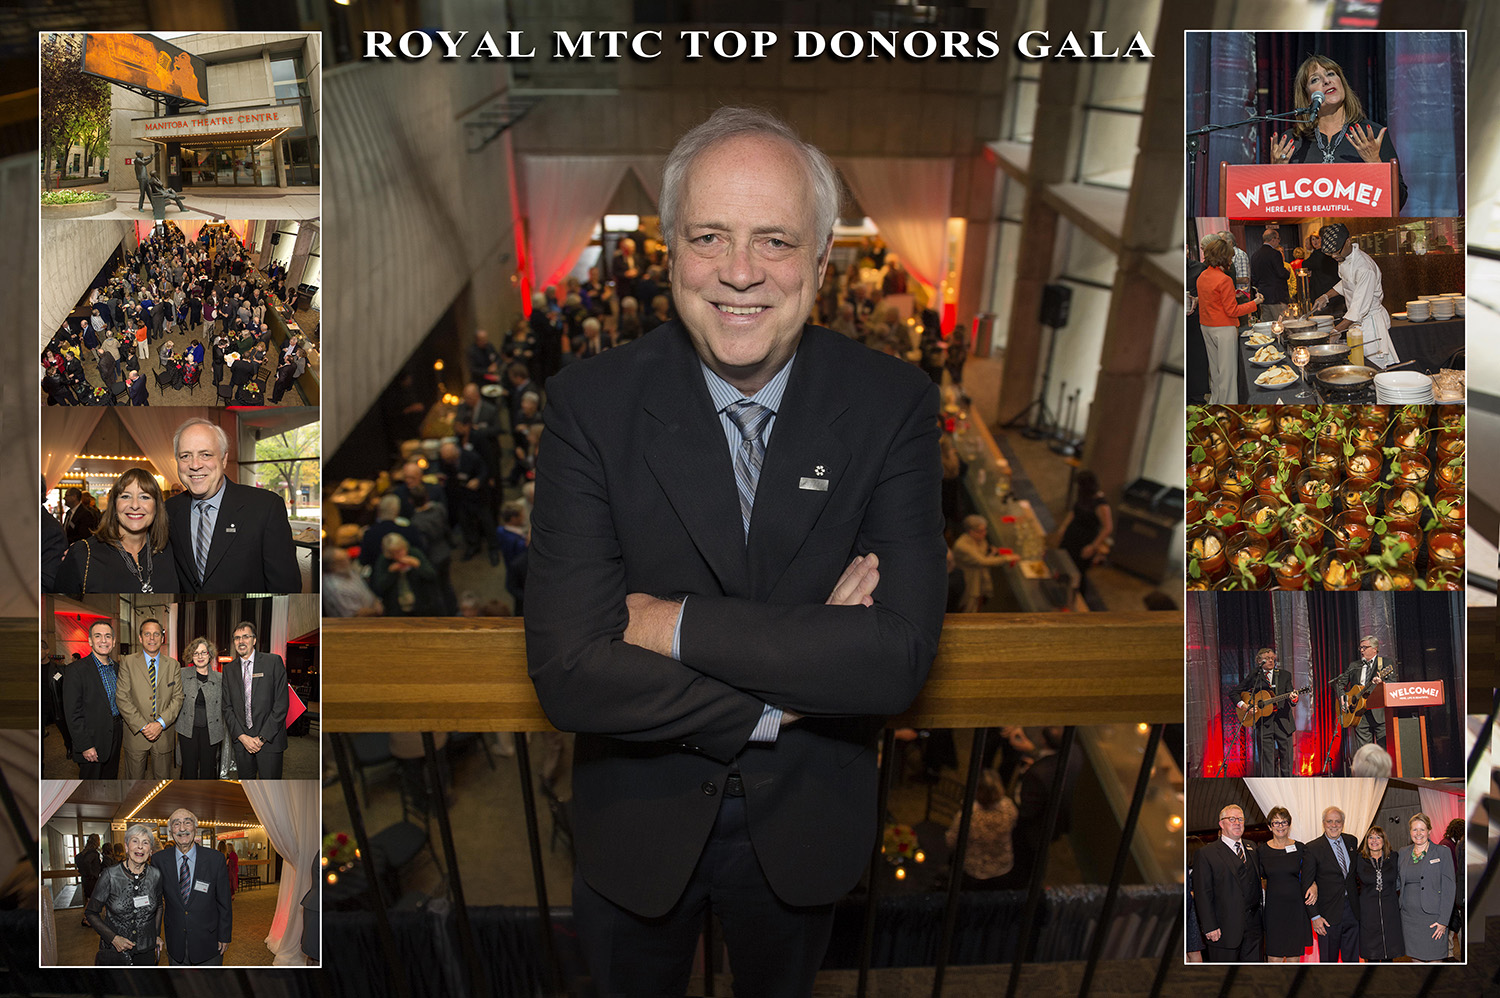 Royal MTC Top Donors Gala